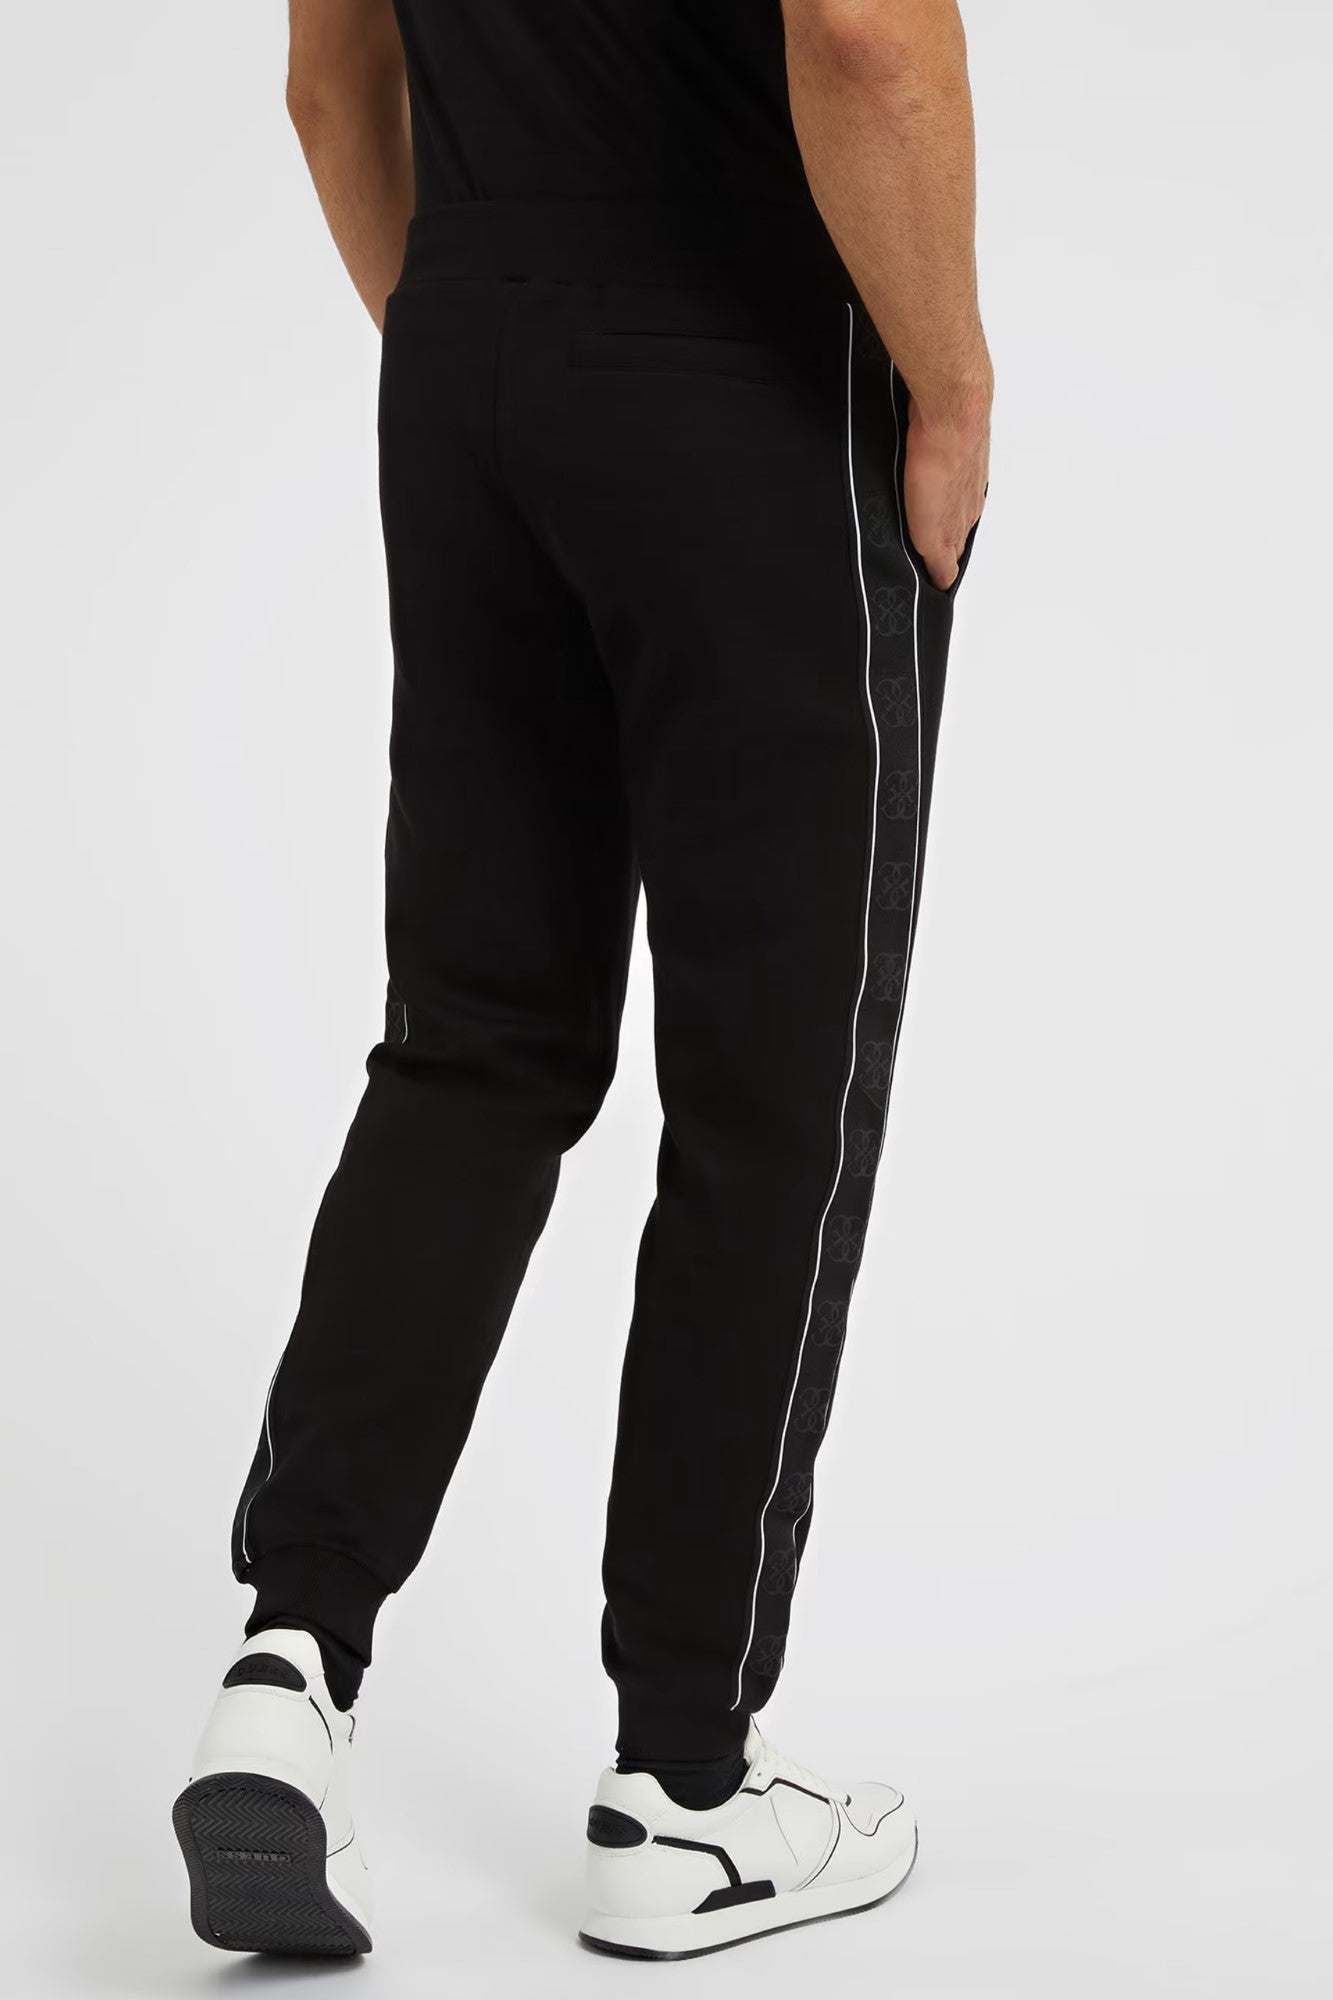 Pantaloni sport Barbati GUESS cu buzunare laterale pentru antrenament ARTICOLE SPORT GUESS   